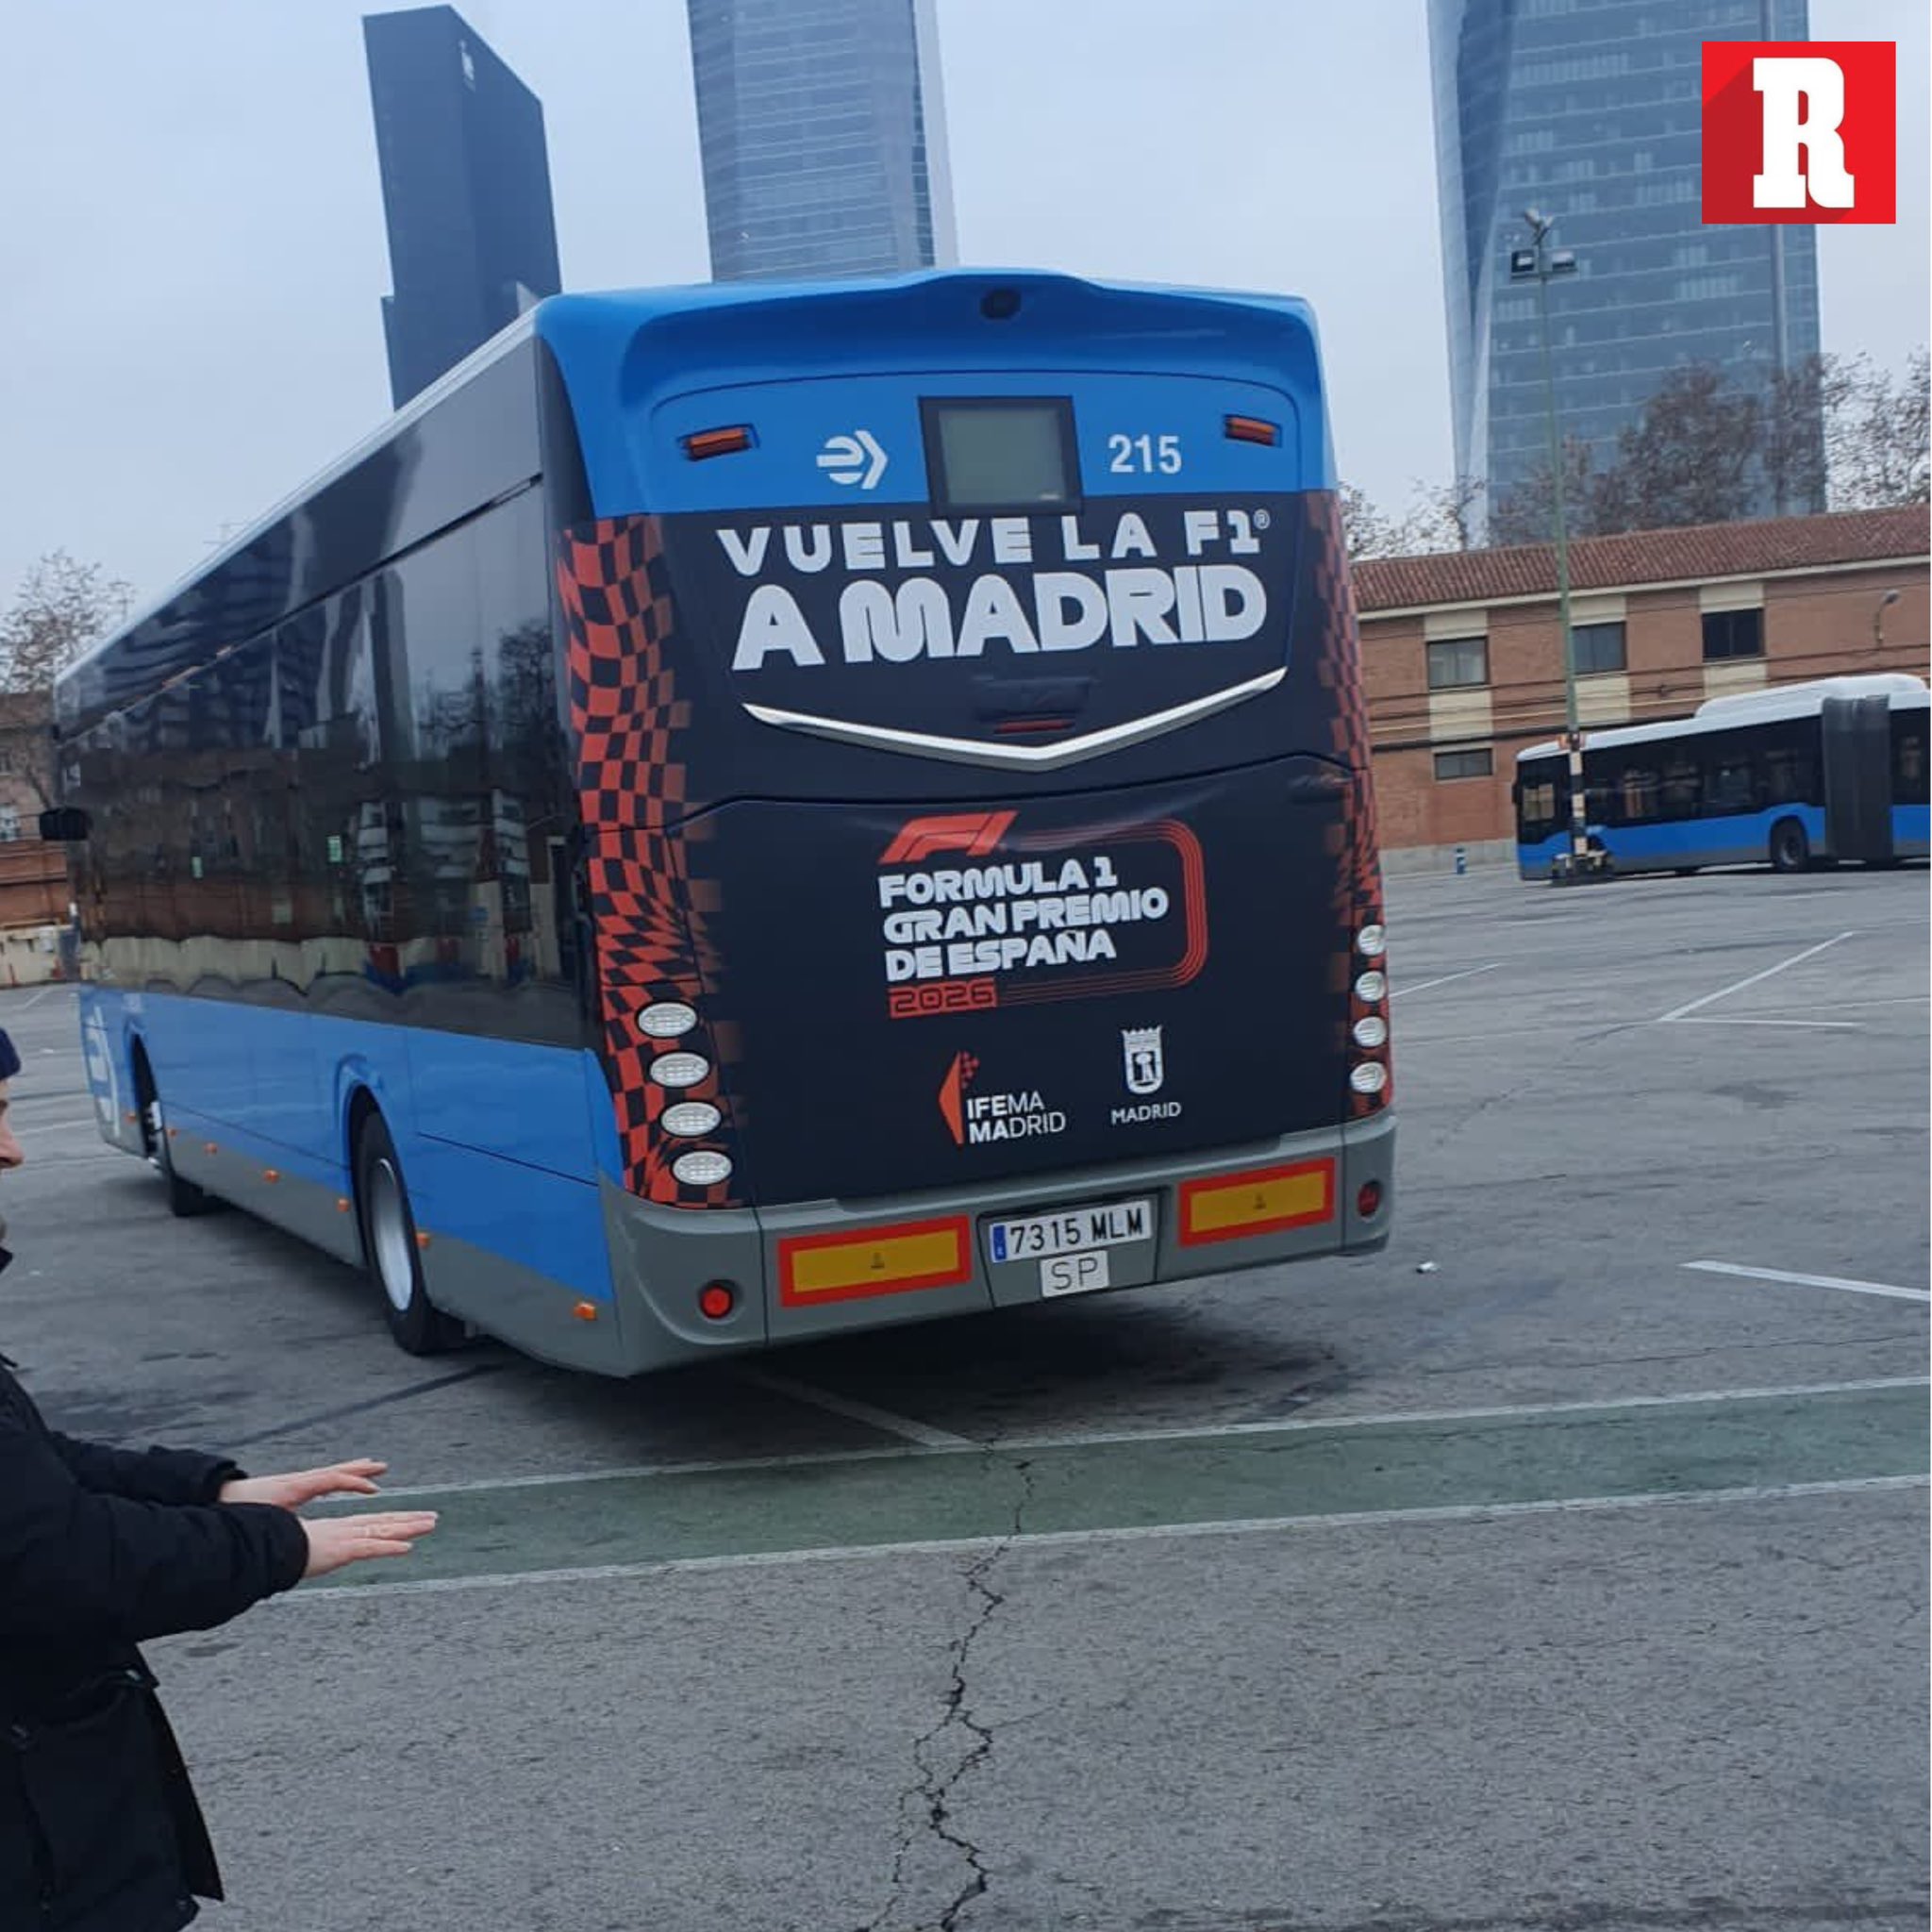 Buses en Madrid con propaganda Fuente: Twitter